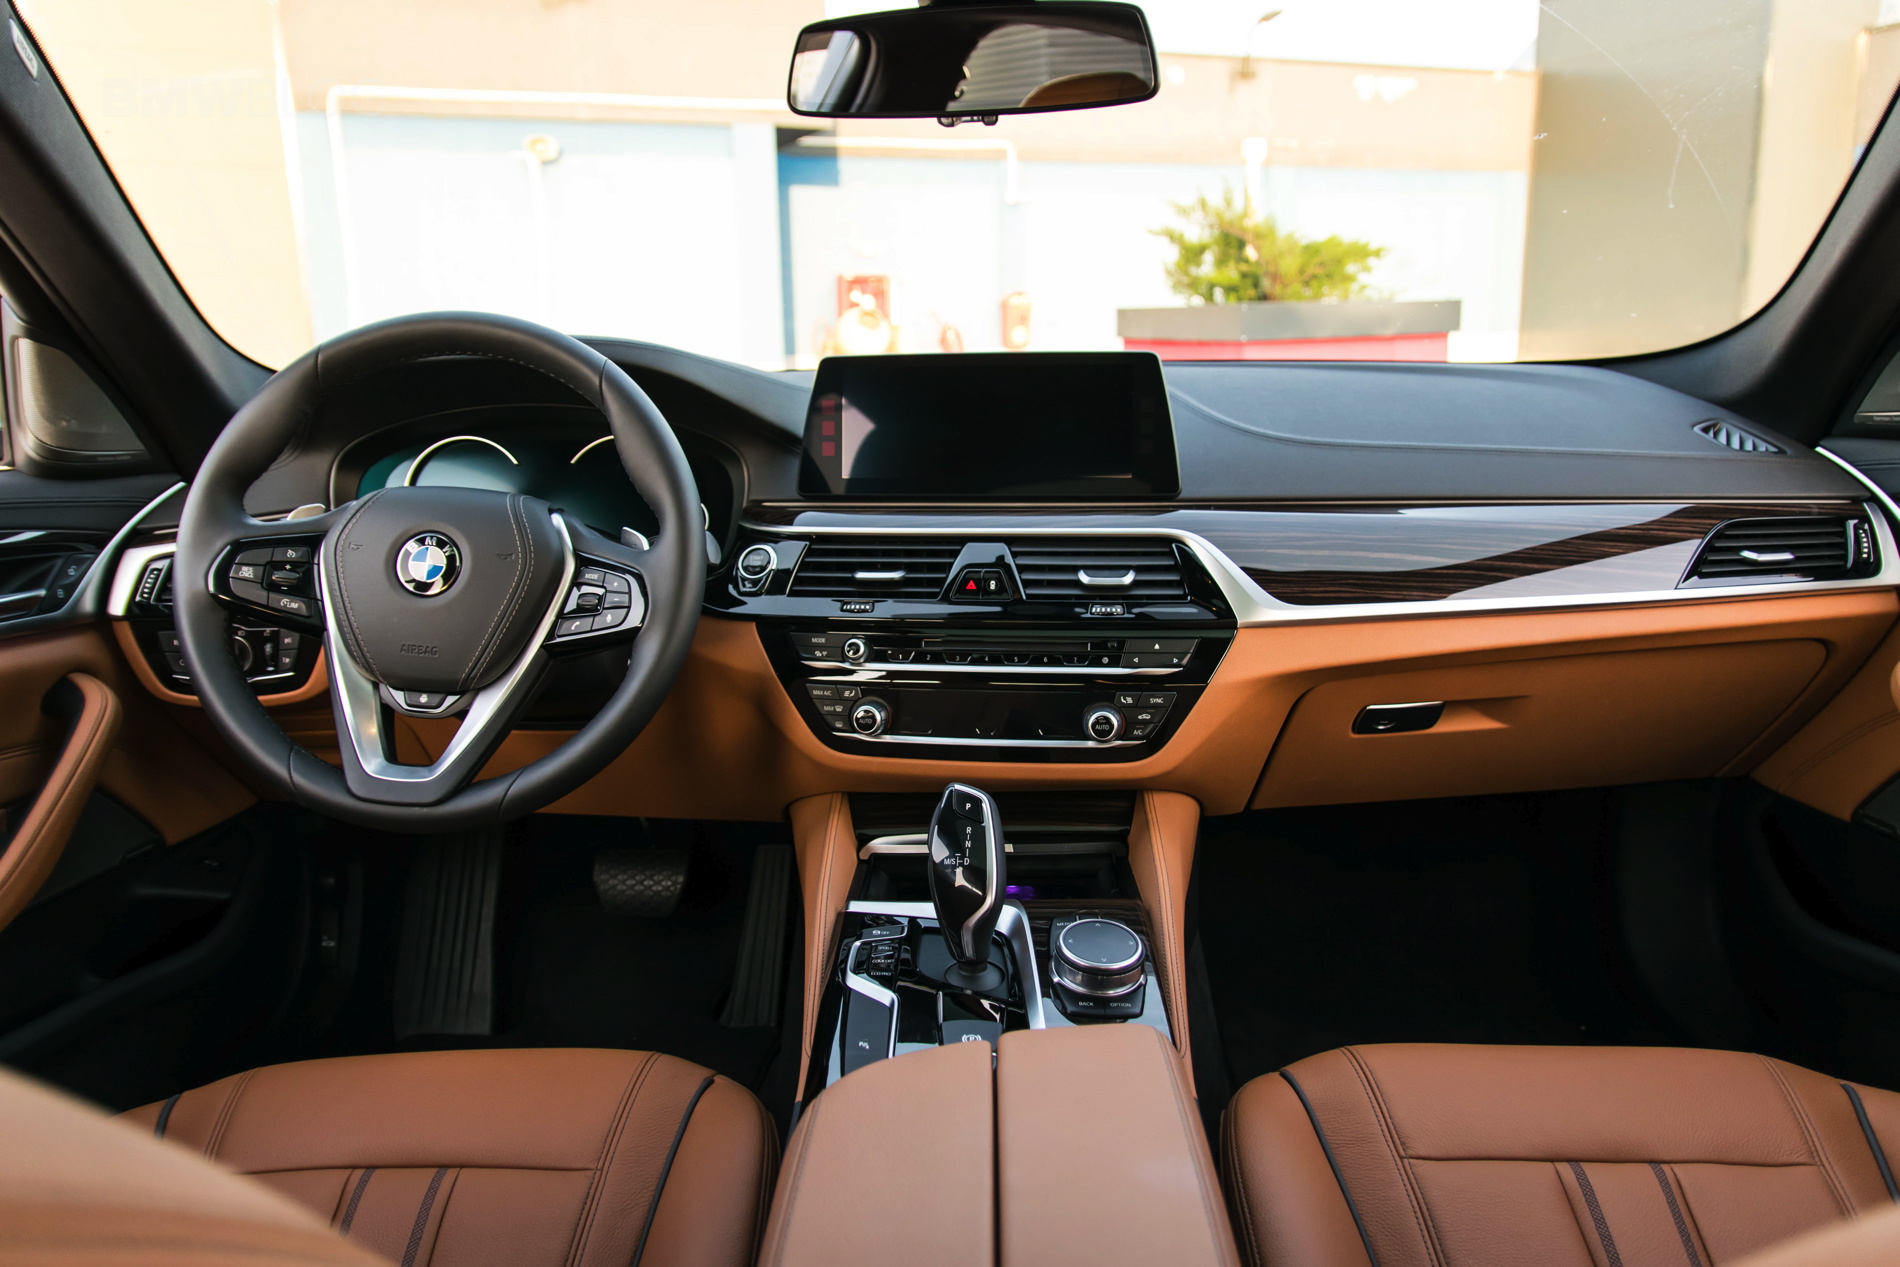 2017 BMW 520d Sedan test drive 19